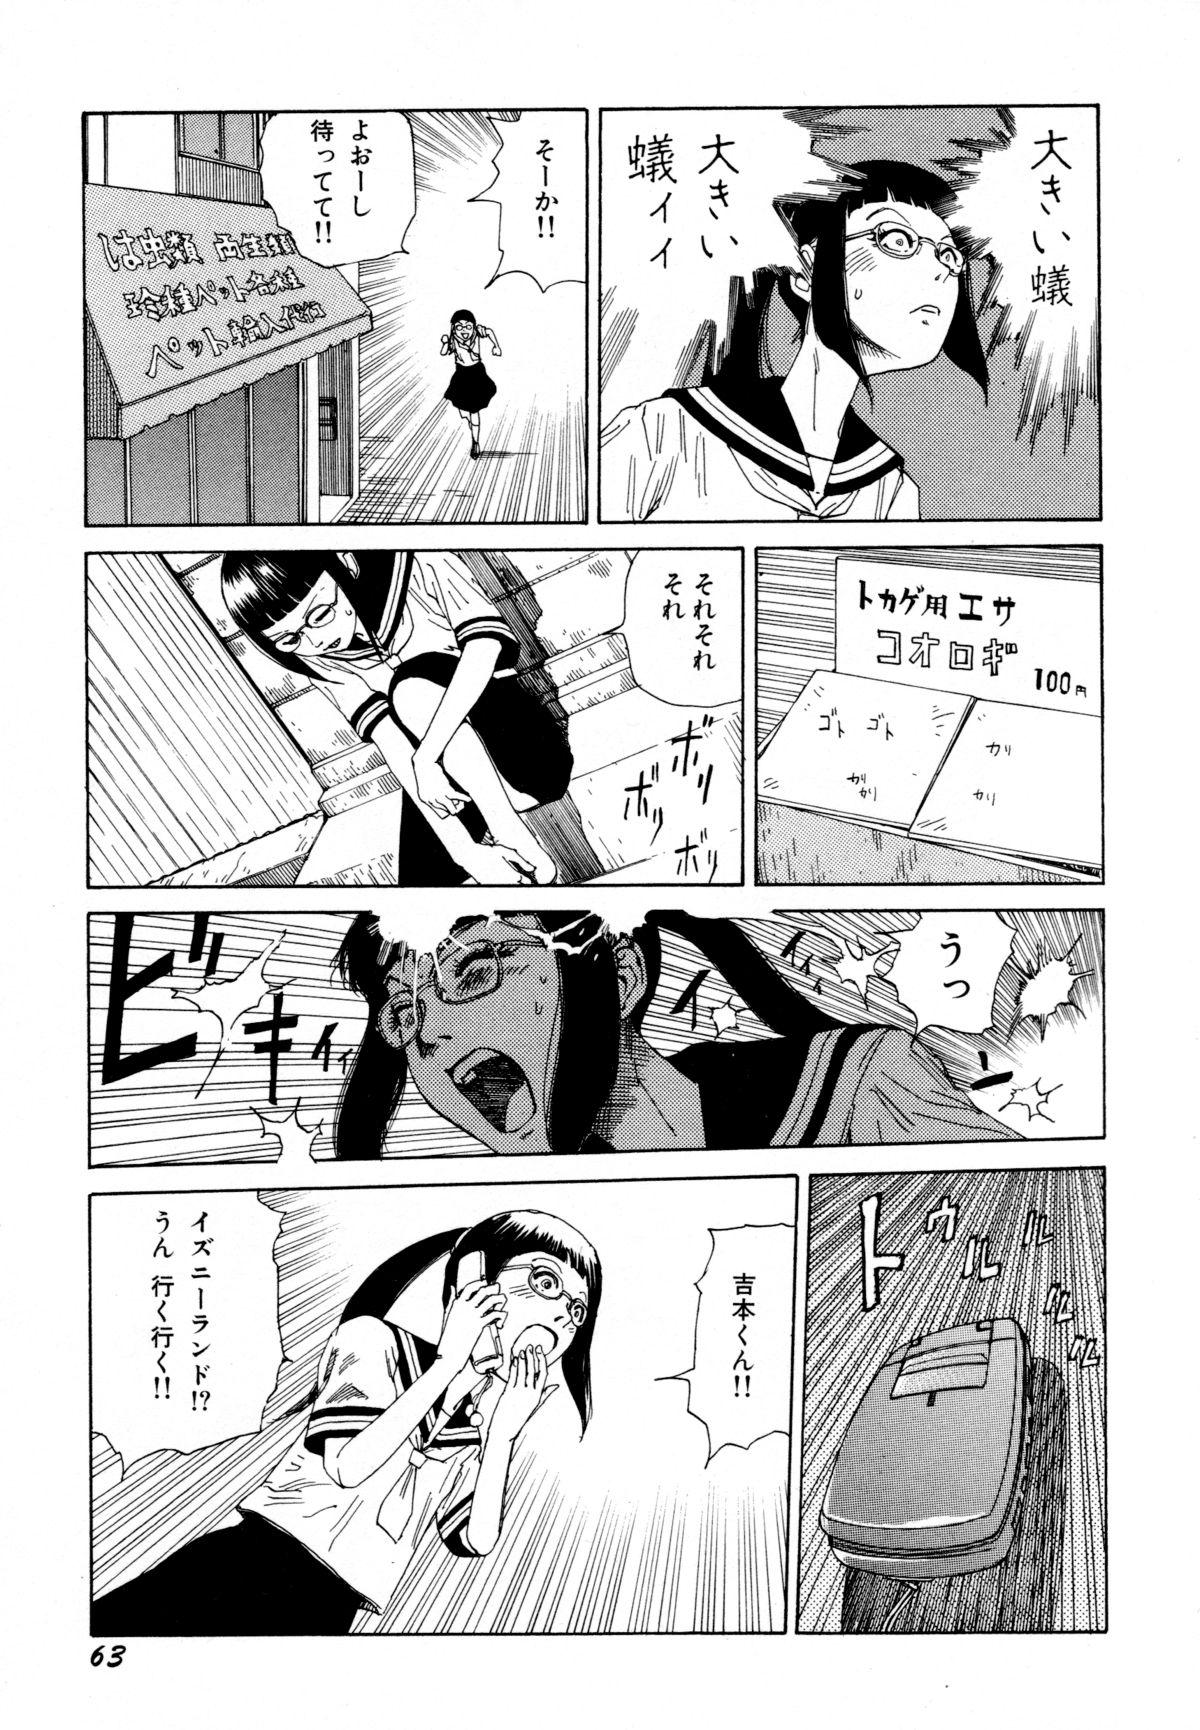 Arijigoku vs Barabara Shoujo - Antlion vs BaraBara Girl 64